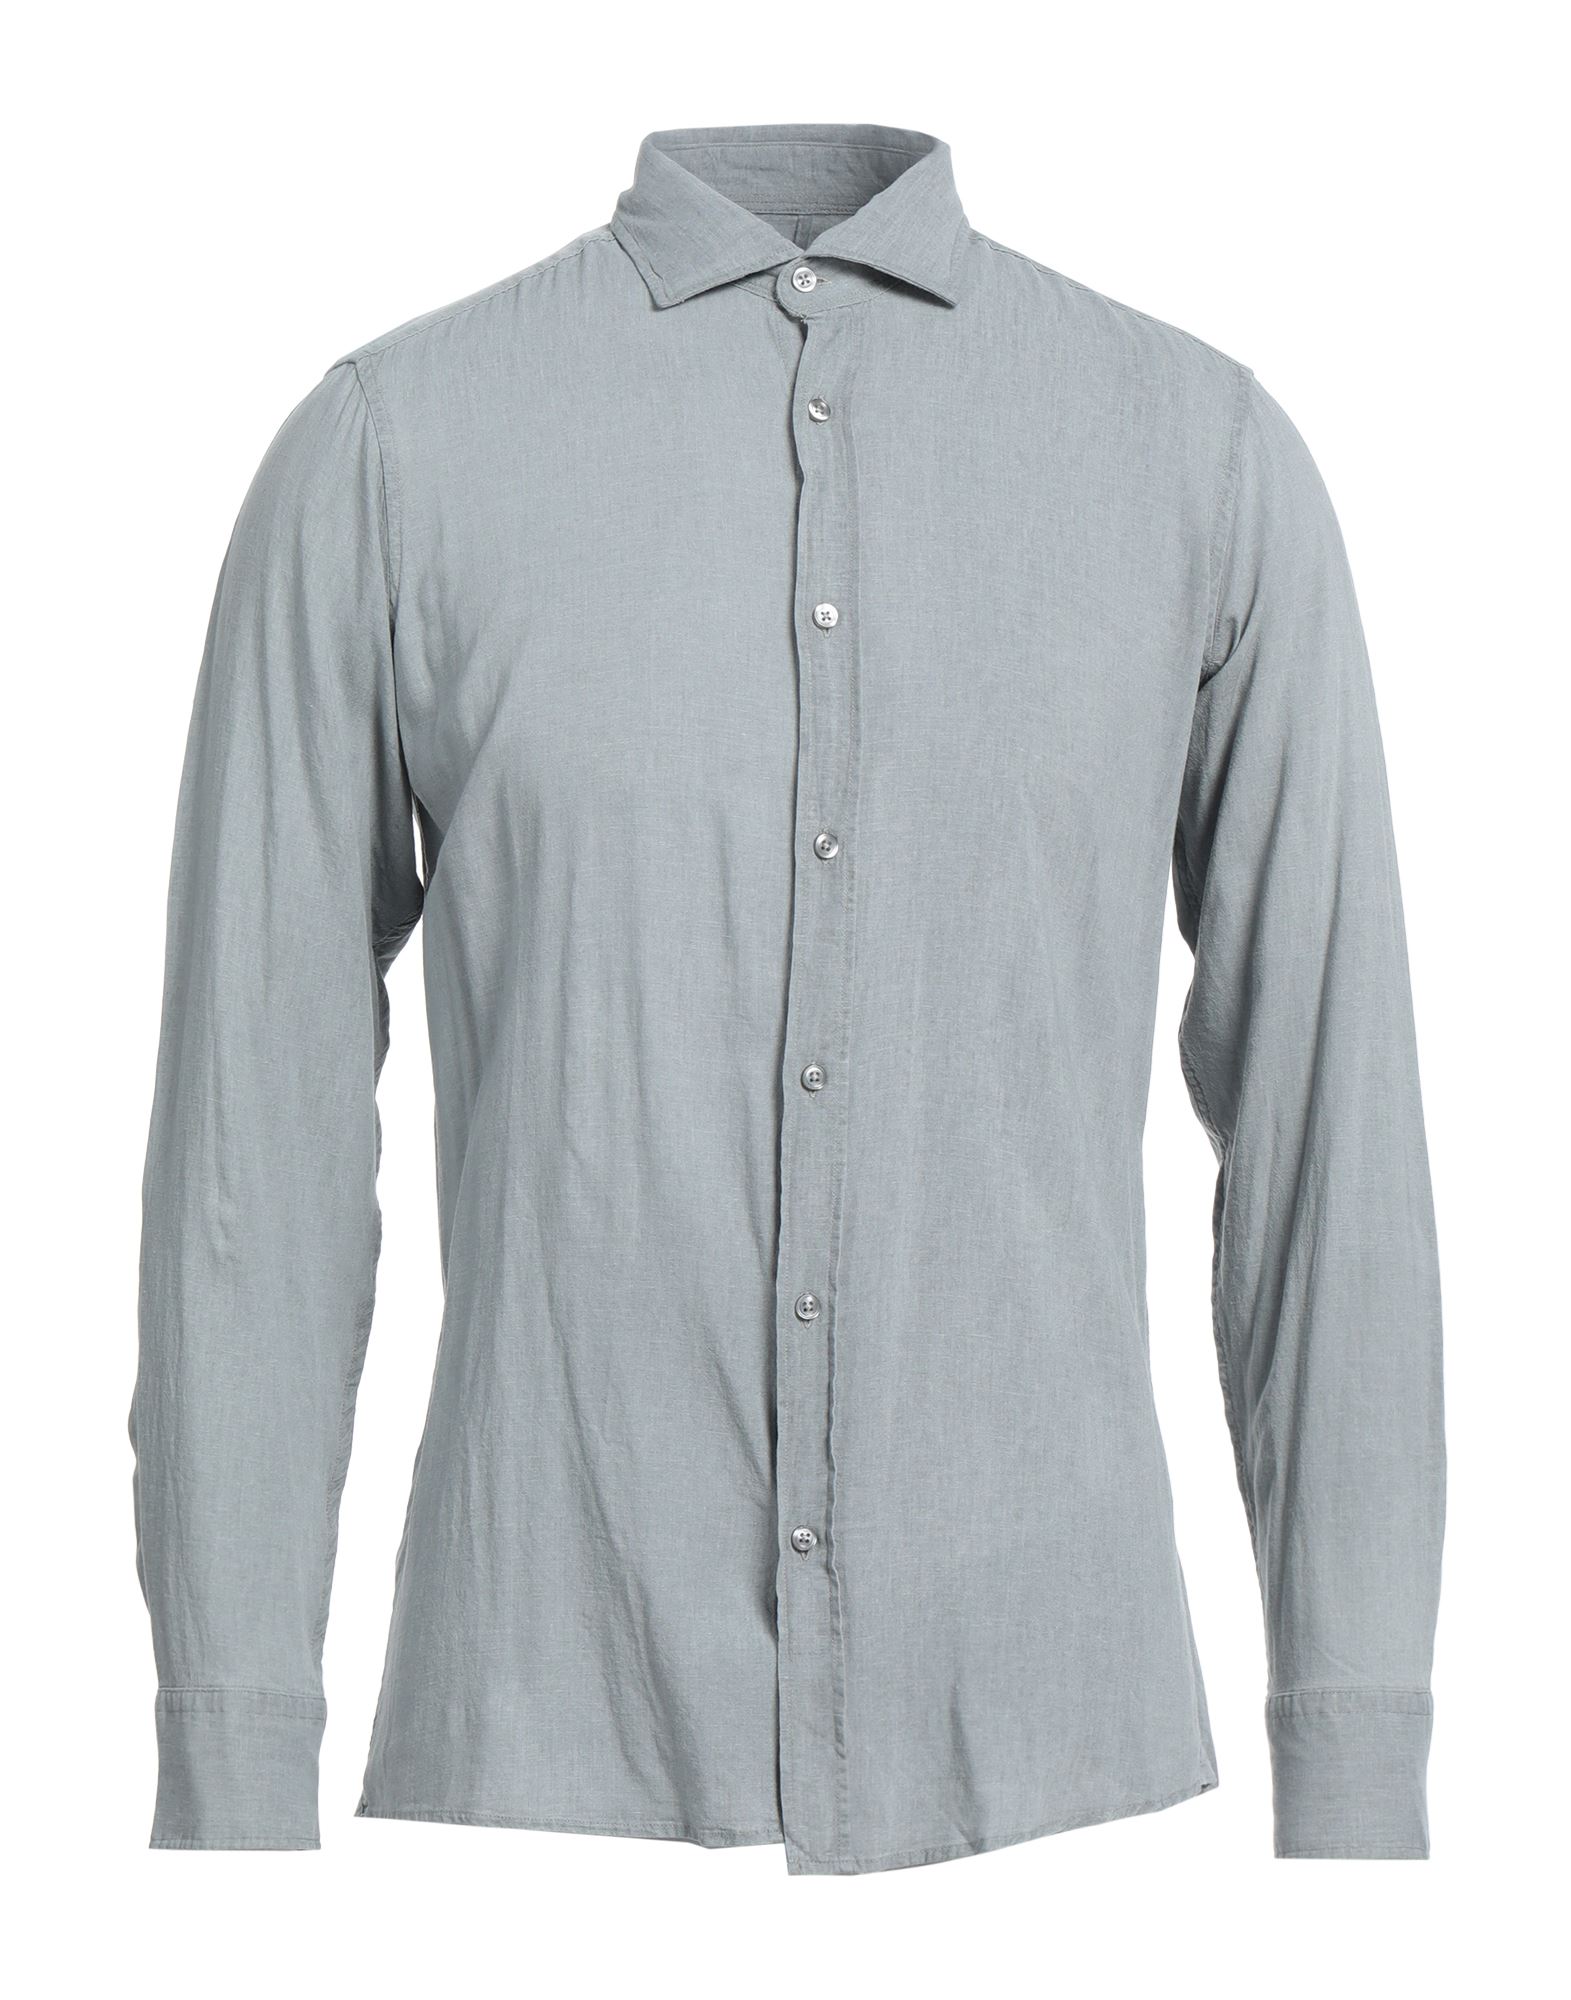 R3d Wöôd Man Shirt Light Grey Size M Linen